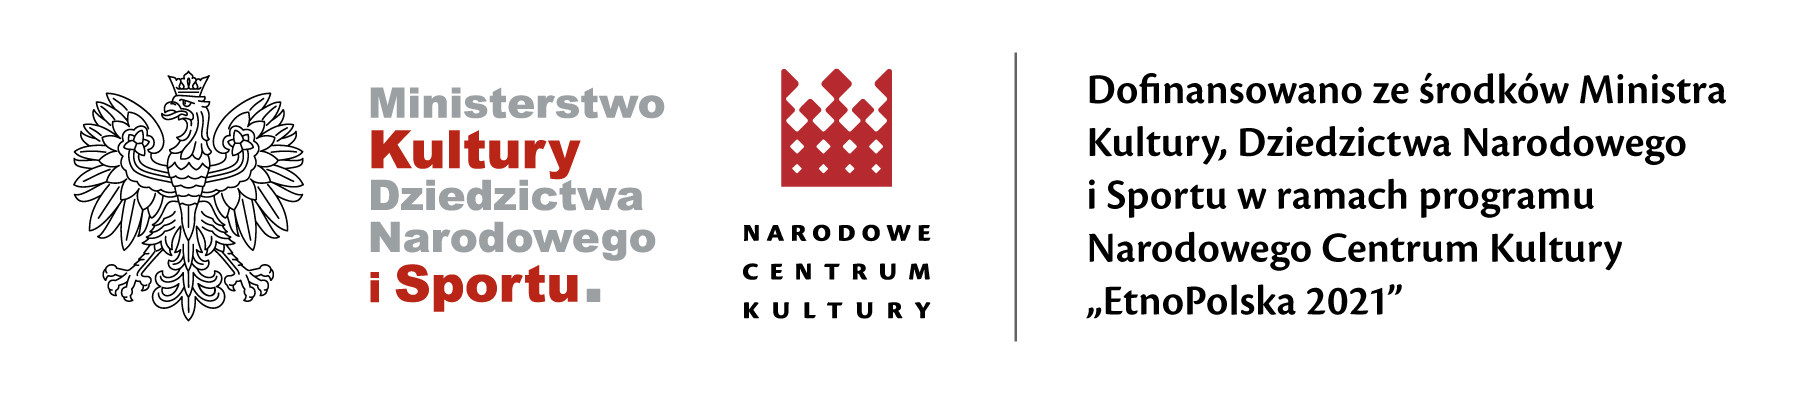 logotypy: MKDNiS i NCK oraz tekst: Dofinansowano ze środków Ministra Kultury, Dziedzictwa Narodowego i Sportu w ramach programu Narodowego Centrum Kultury „EtnoPolska 2021”